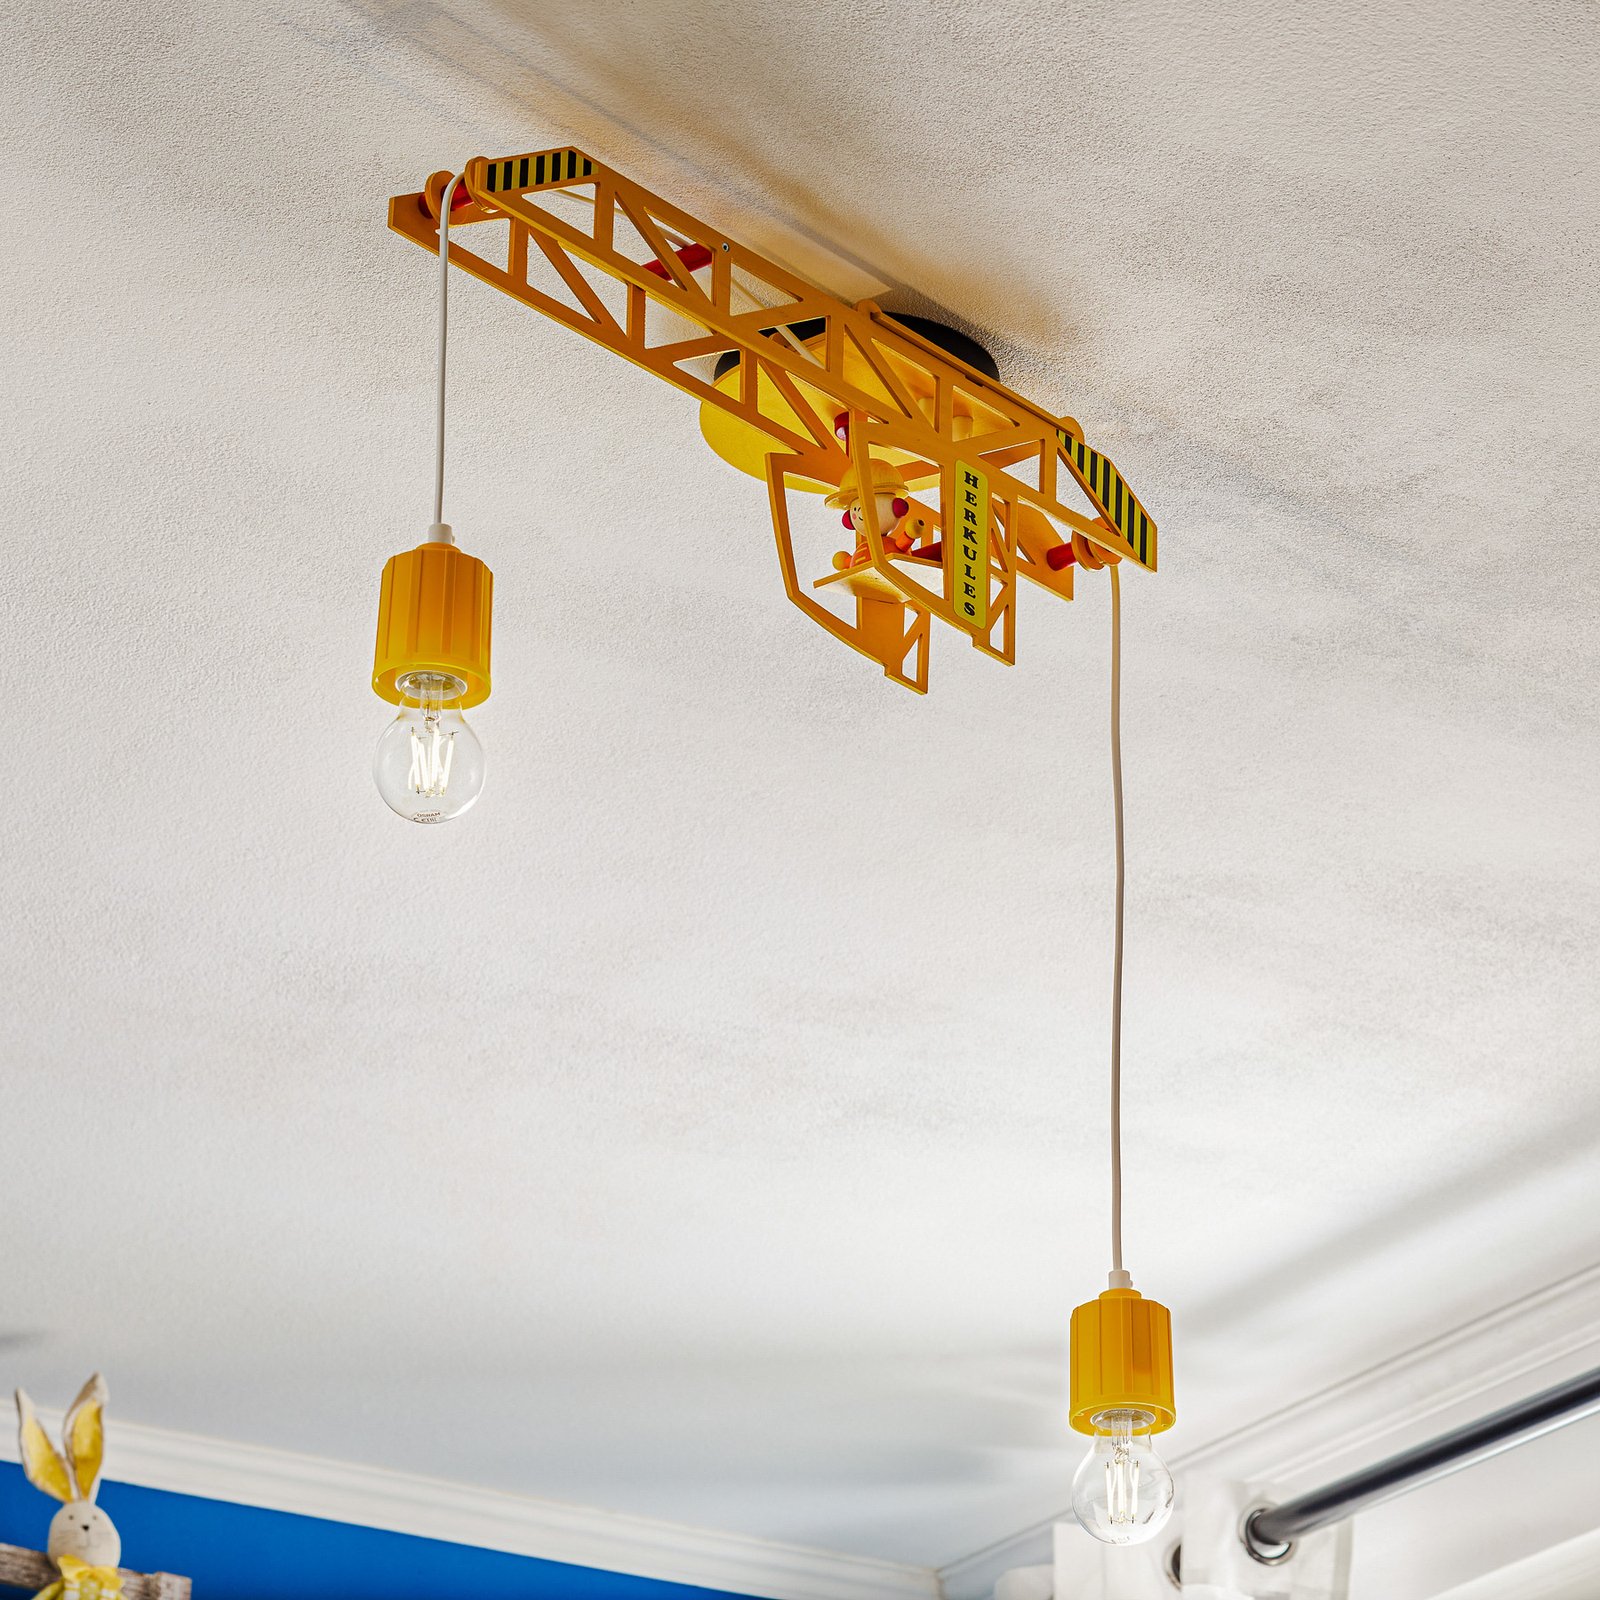 Bodo ceiling lamp in crane shape